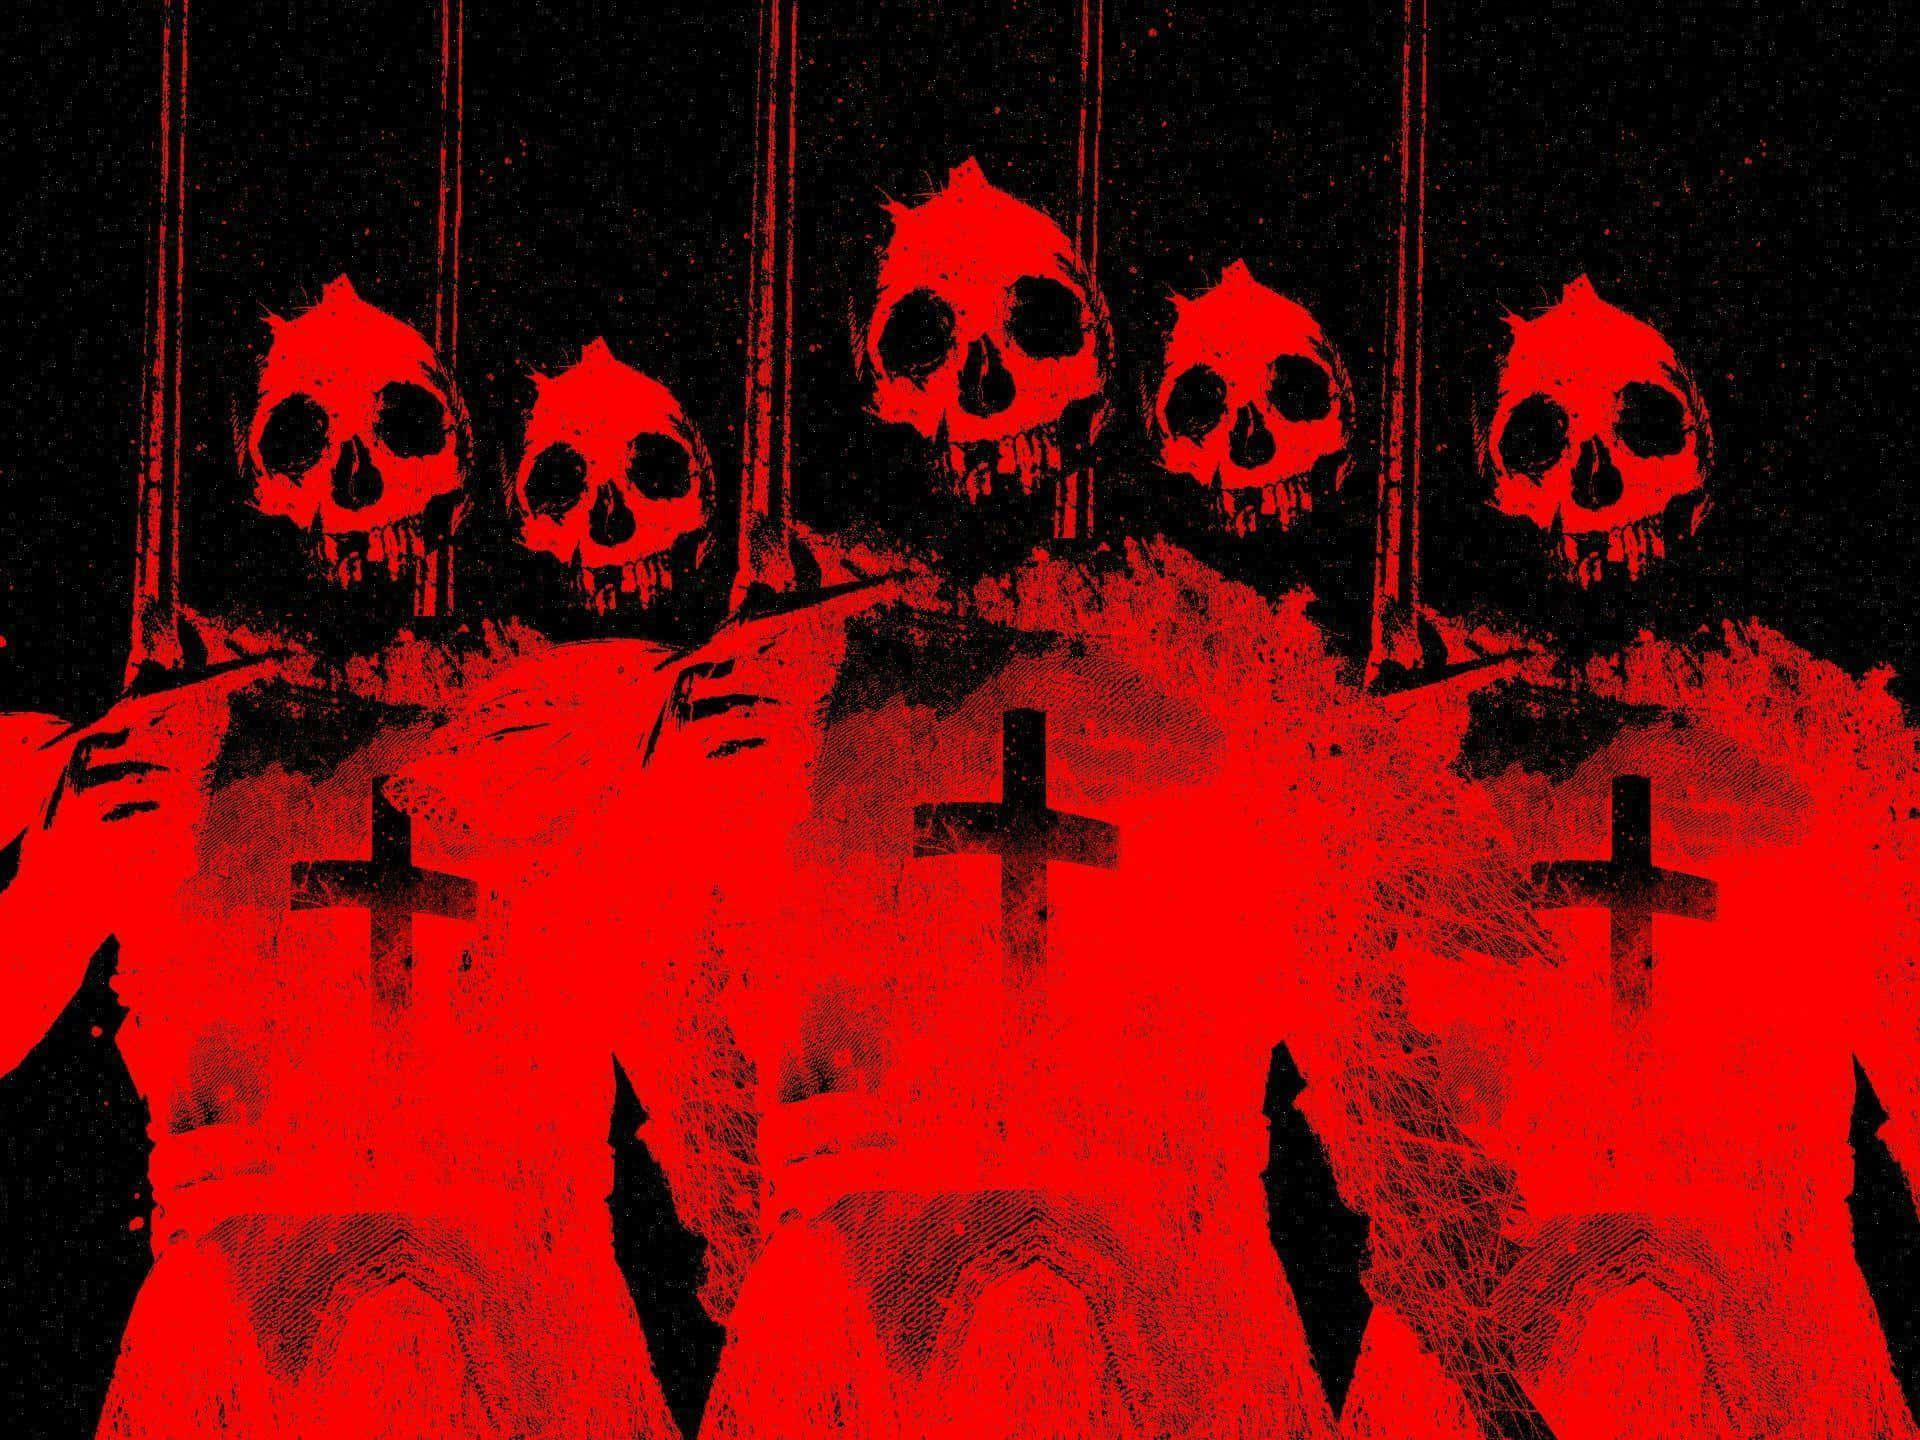 Red Skull Cross Imagery